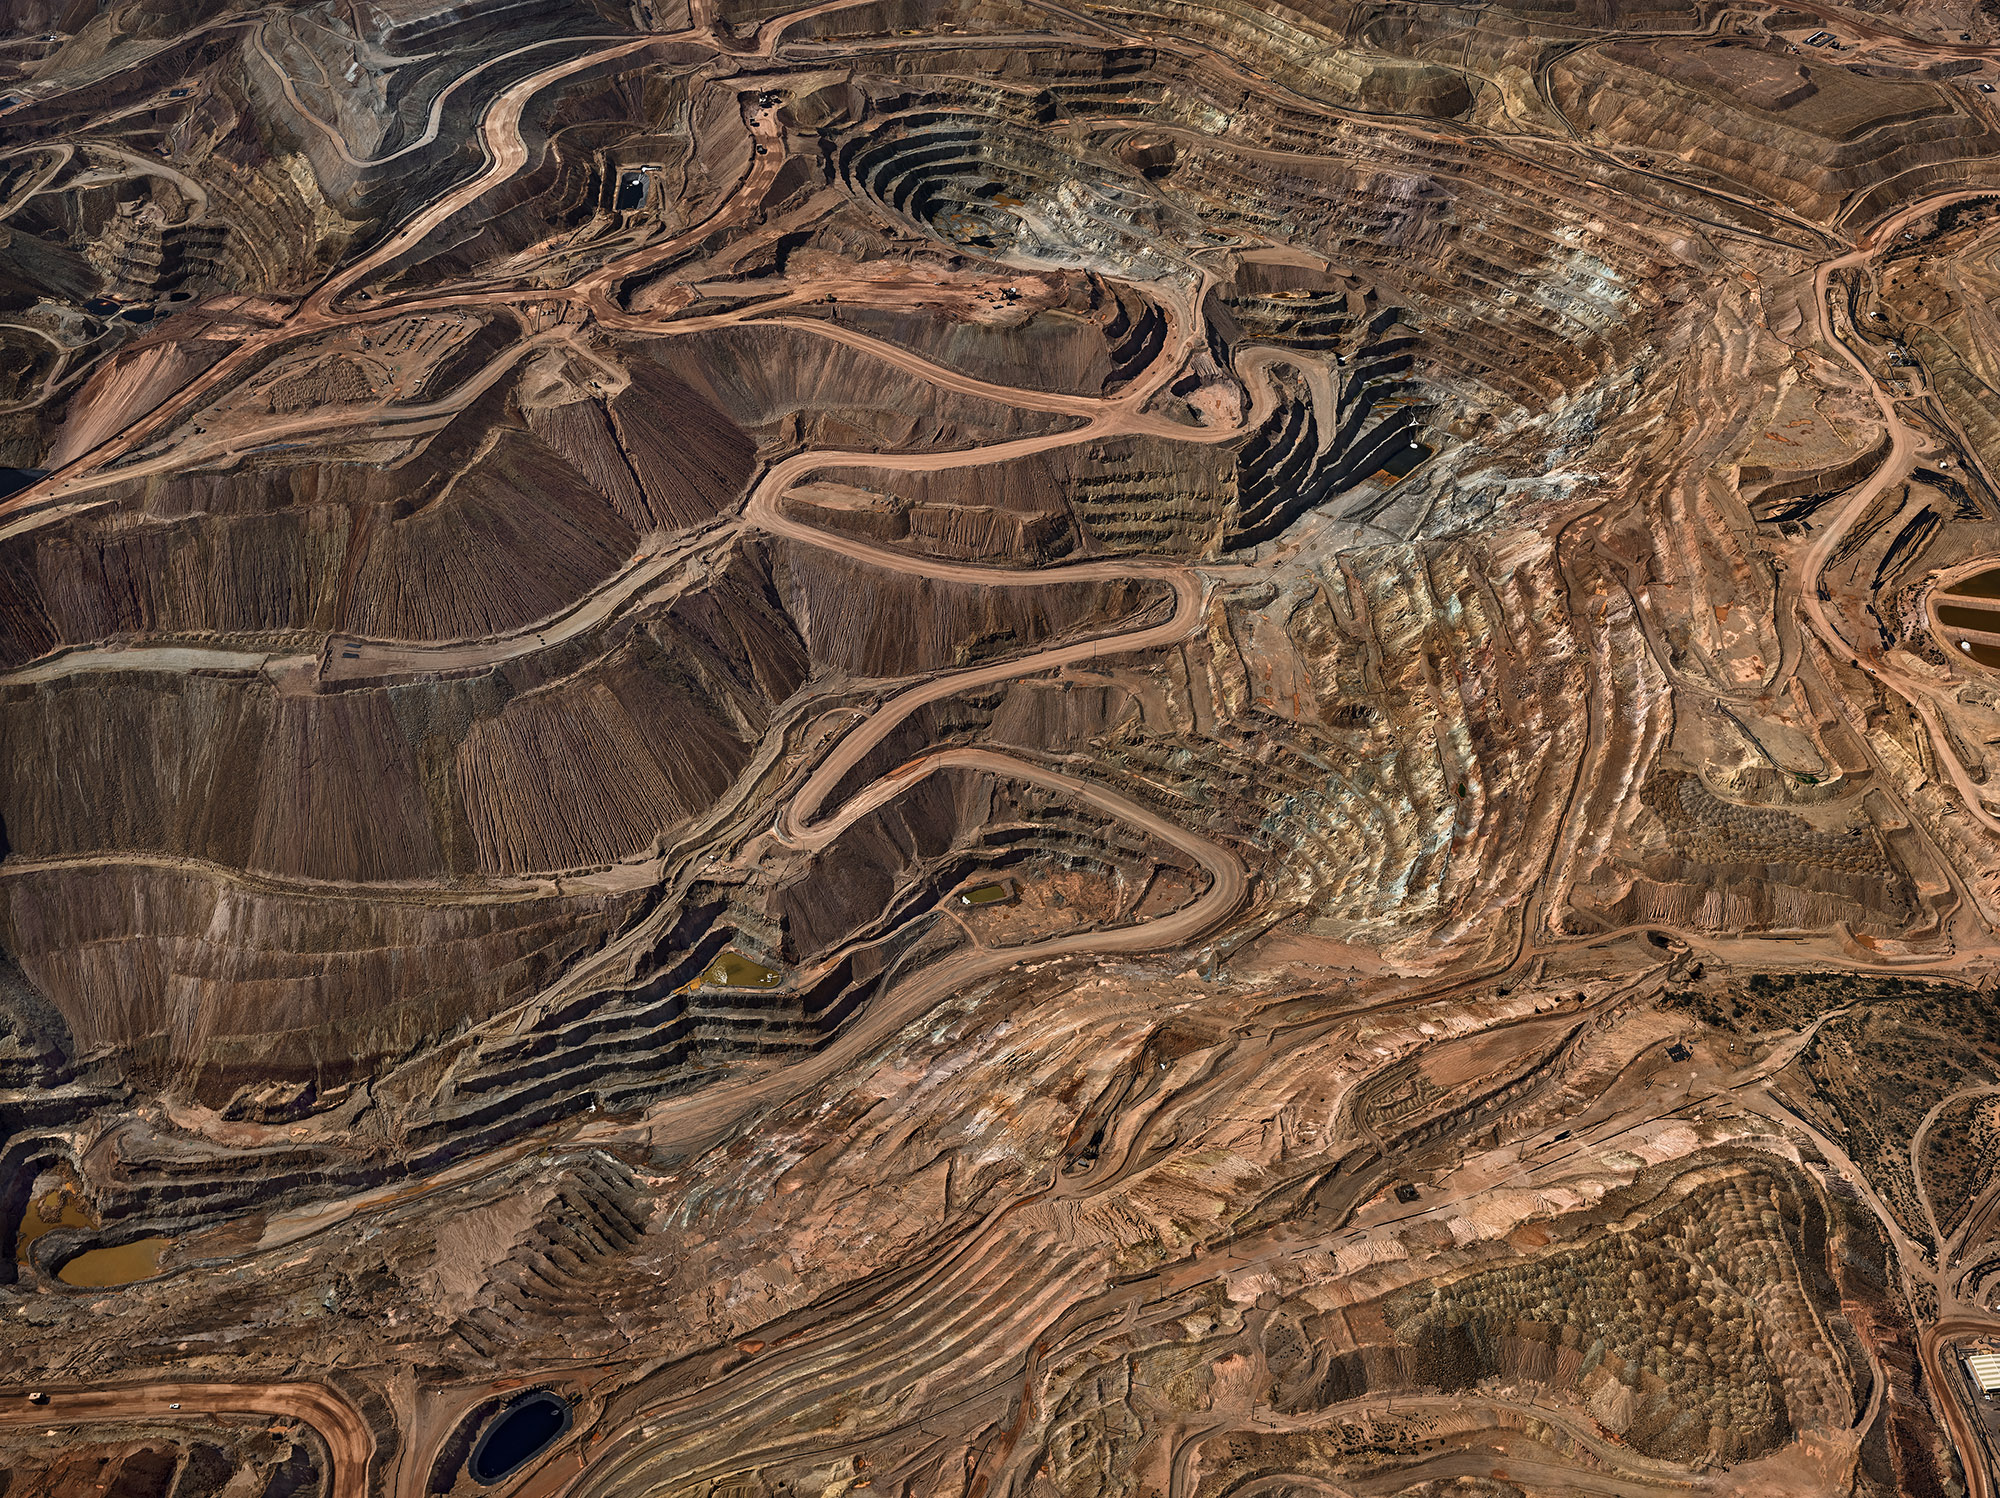 Tyone Mine #3, Silver City, New Mexico, USA, 2012. Morenci Mine #2, Clifton, Arizona, USA,2012.©Edward Burtynsky